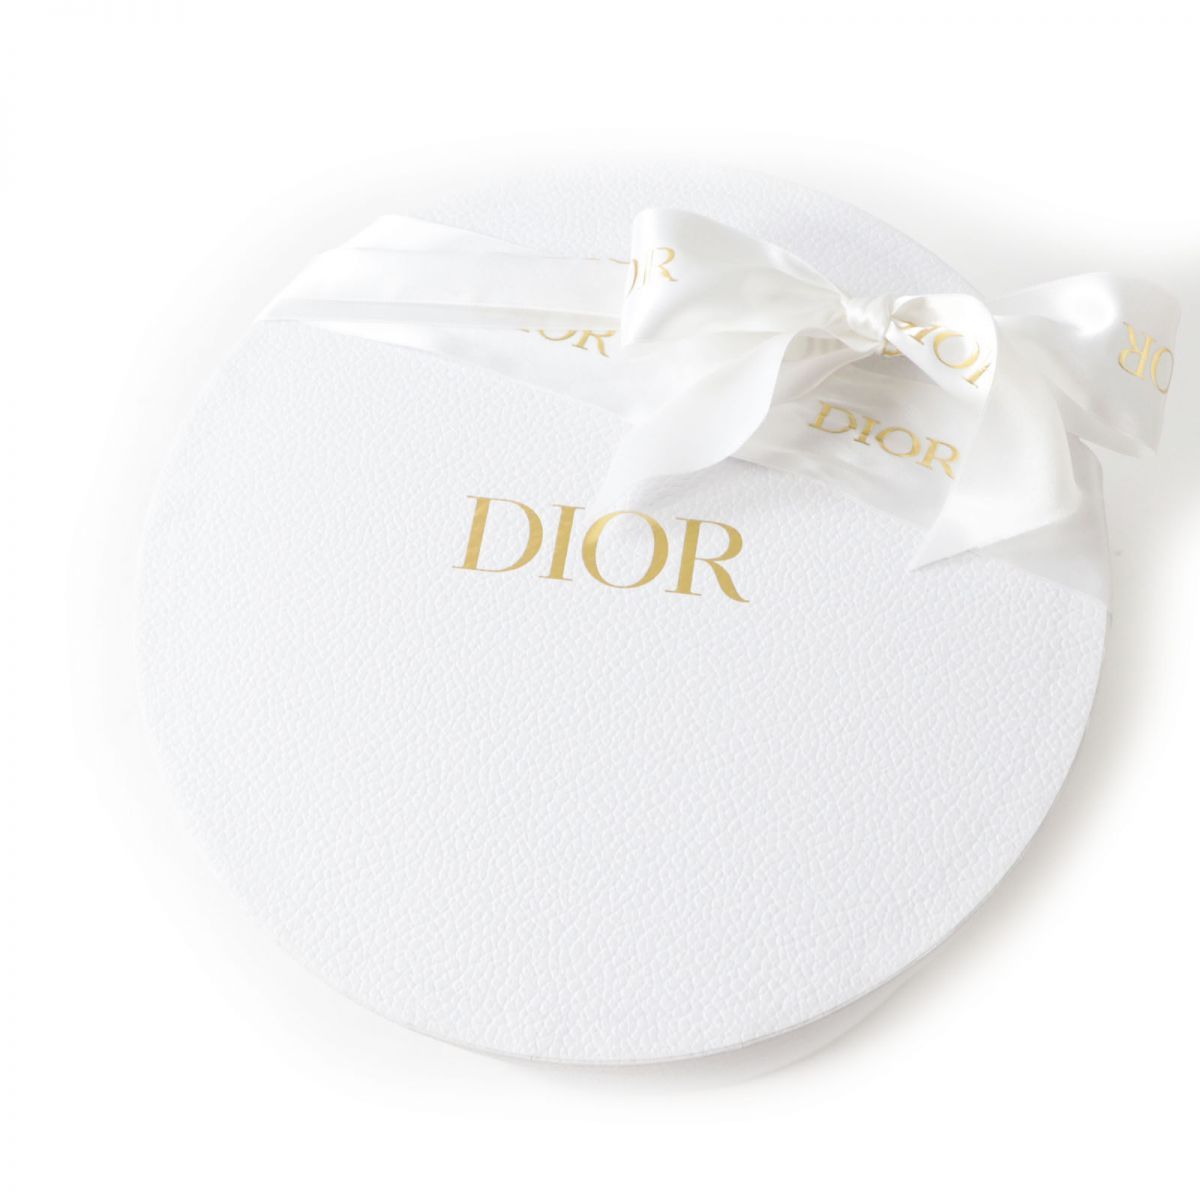 極美◎正規品 Christian Dior クリスチャンディオール 24BTI923E130 ...